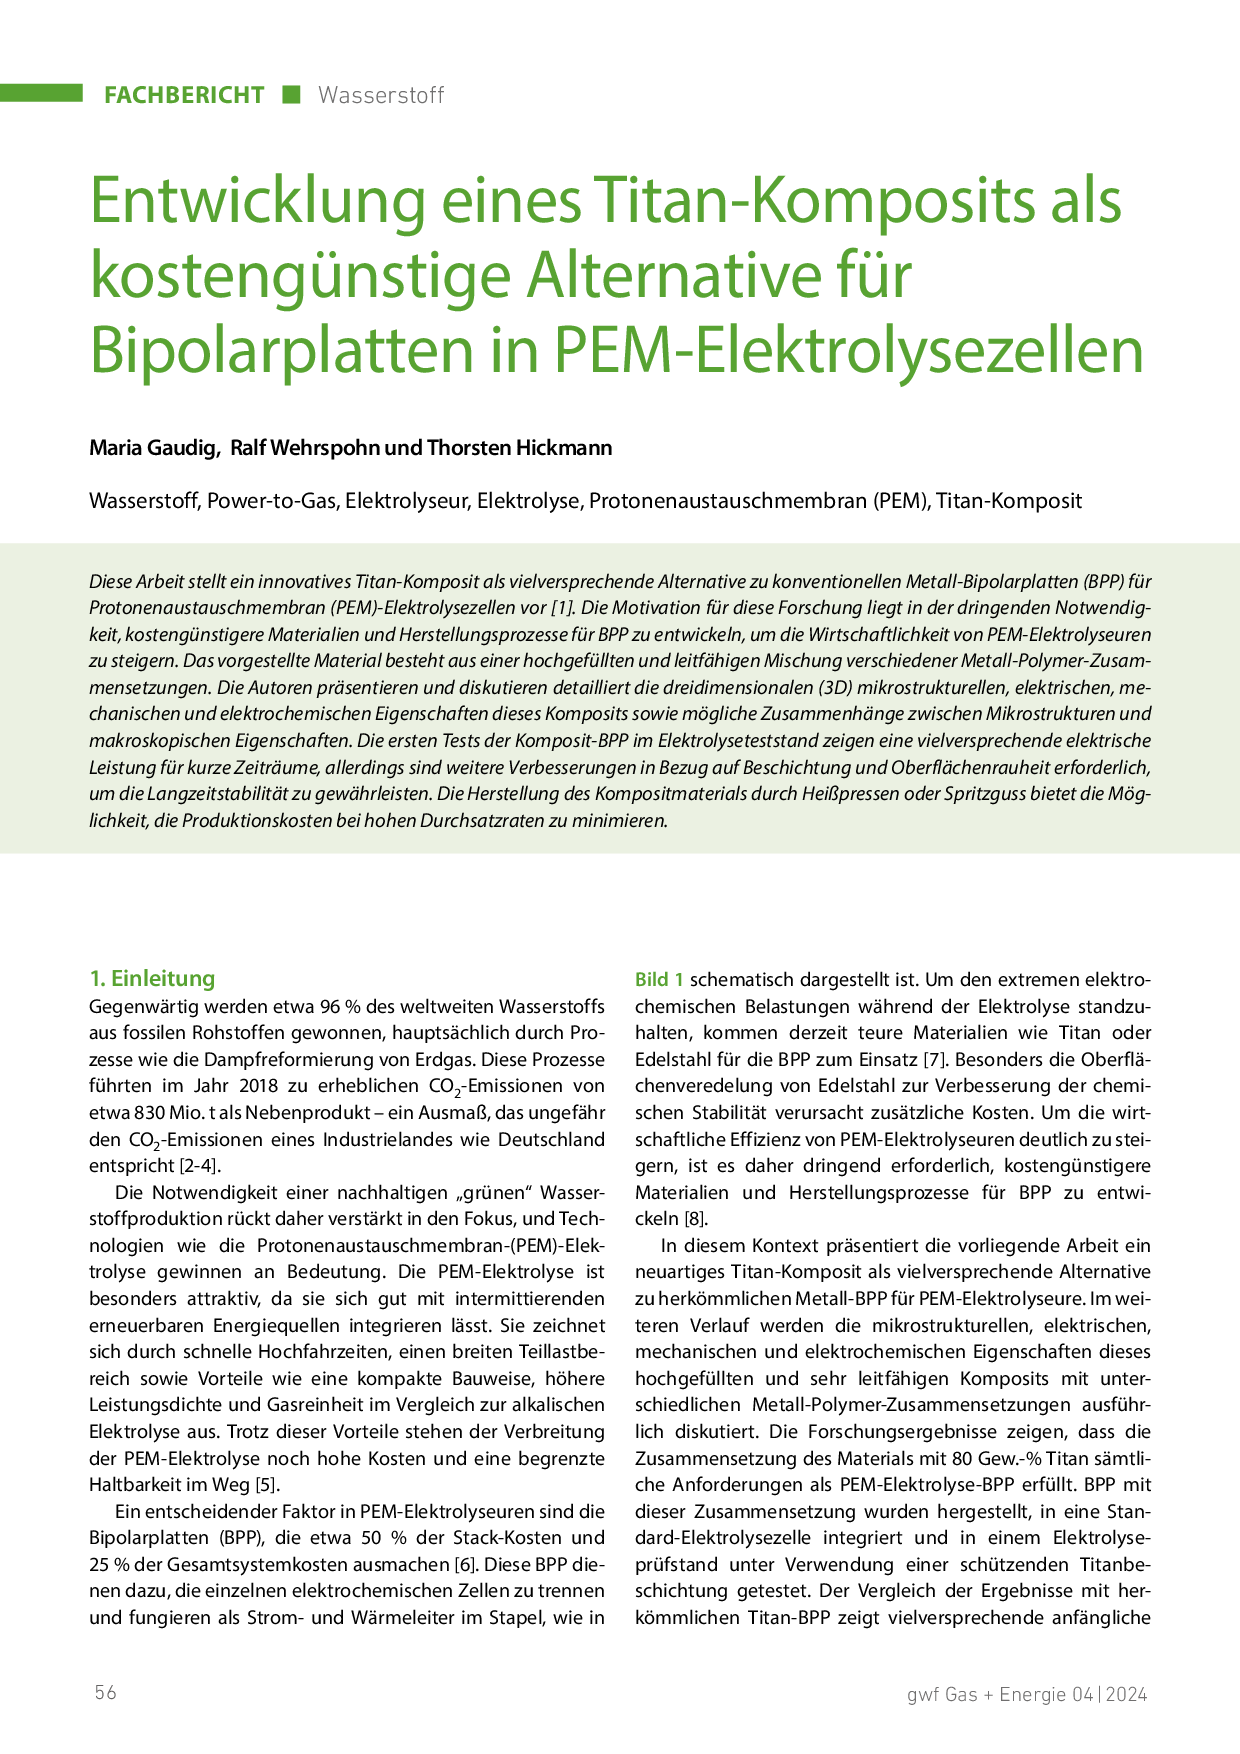 Entwicklung eines Titan-Komposits als kostengünstige Alternative für Bipolarplatten in PEM-Elektrolysezellen